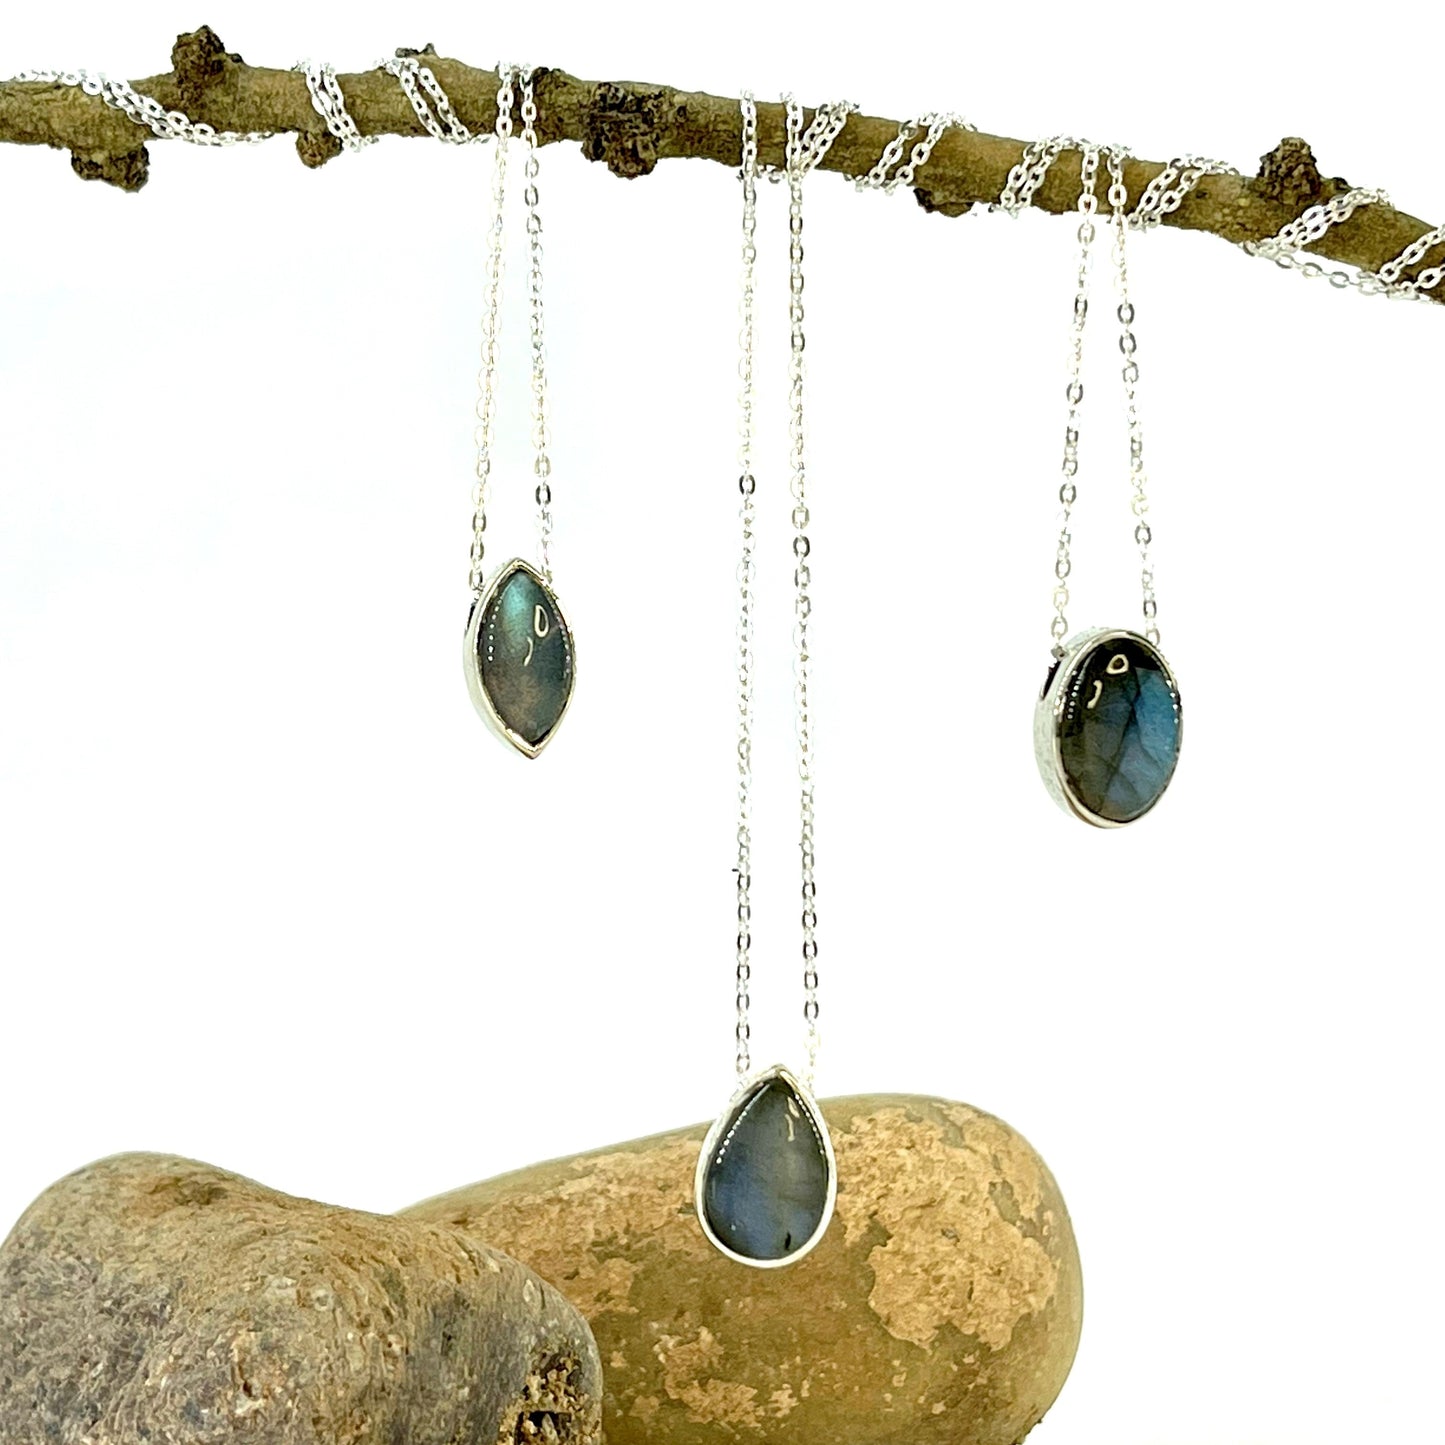 Labradorite Necklace - 3 Unique Designs Stones Crystal Shop